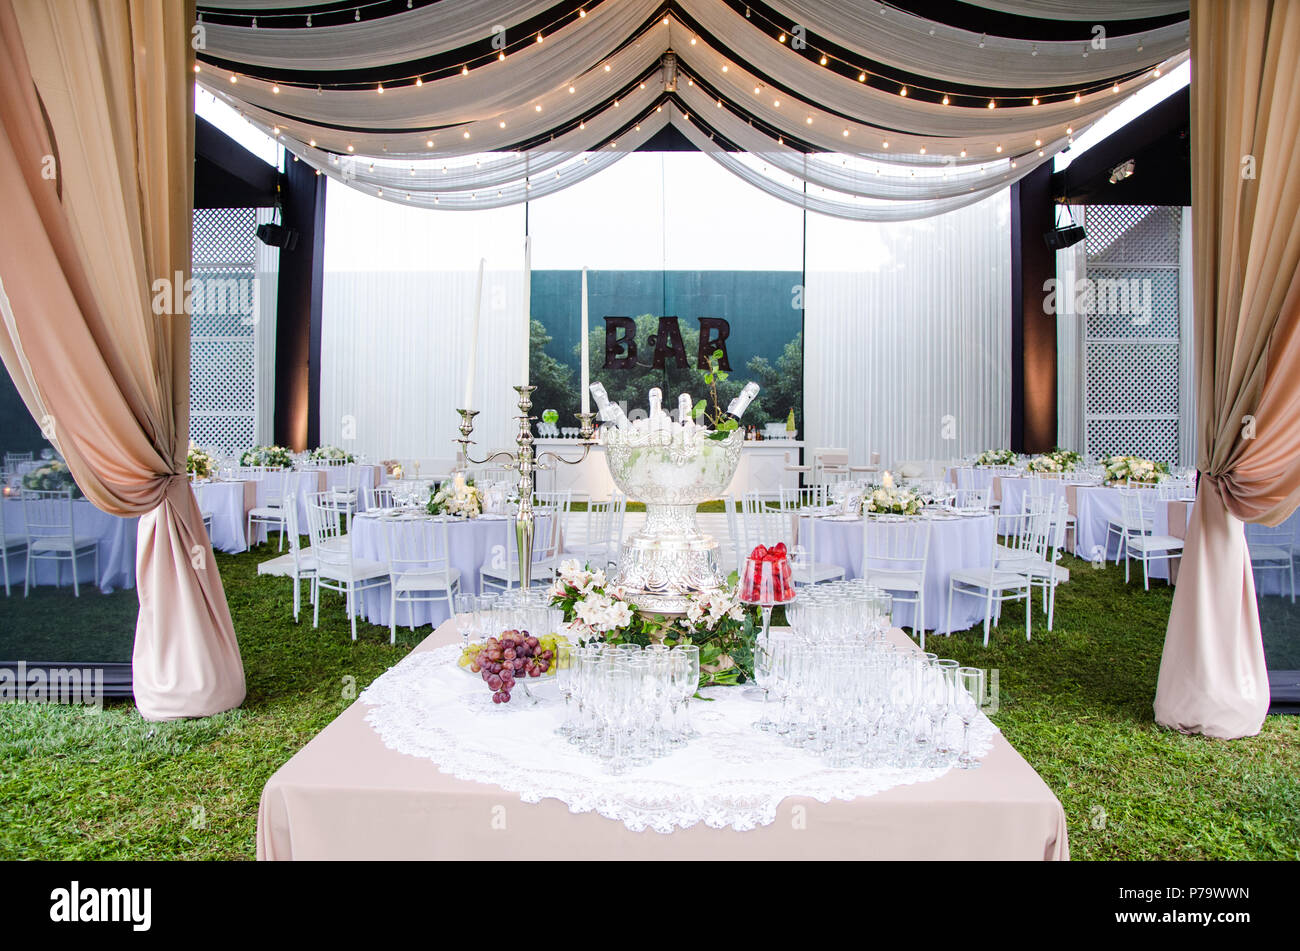 Eine Weitwinkelansicht eine Hochzeit Veranstaltungsort, mit Tanzfläche und die umliegenden Tische. Ein großer Kronleuchter in der Mitte des Raumes hat Werkzeuge von ihm drapiert, mit Mini-LEDS. Stockfoto